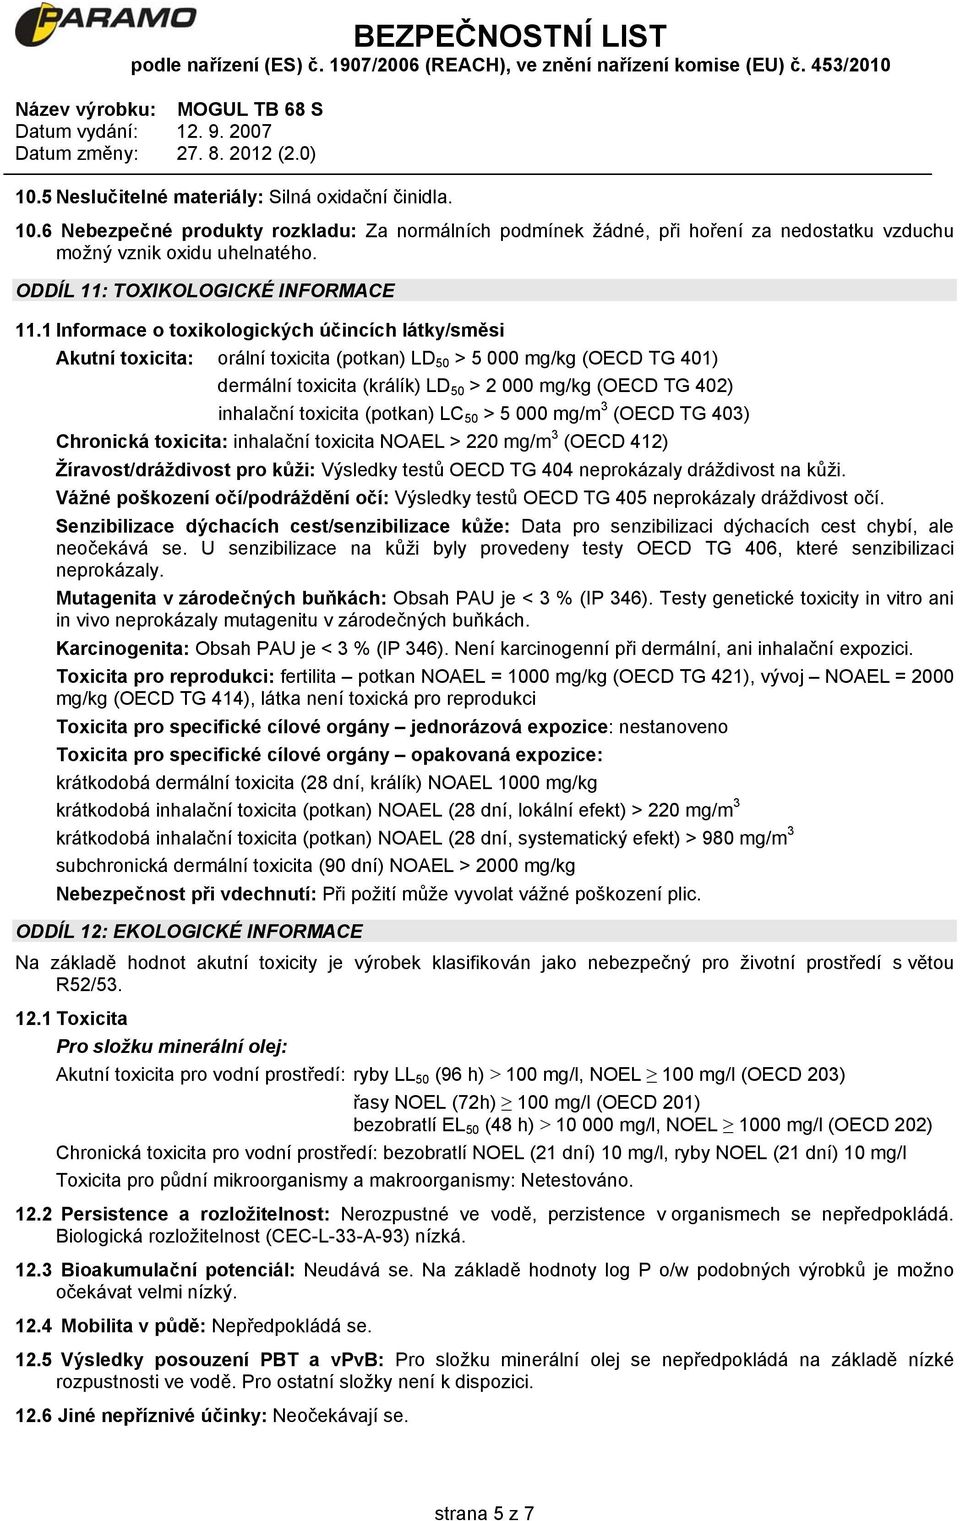 1 Informace o toxikologických účincích látky/směsi Akutní toxicita: orální toxicita (potkan) LD 50 > 5 000 mg/kg (OECD TG 401) dermální toxicita (králík) LD 50 > 2 000 mg/kg (OECD TG 402) inhalační